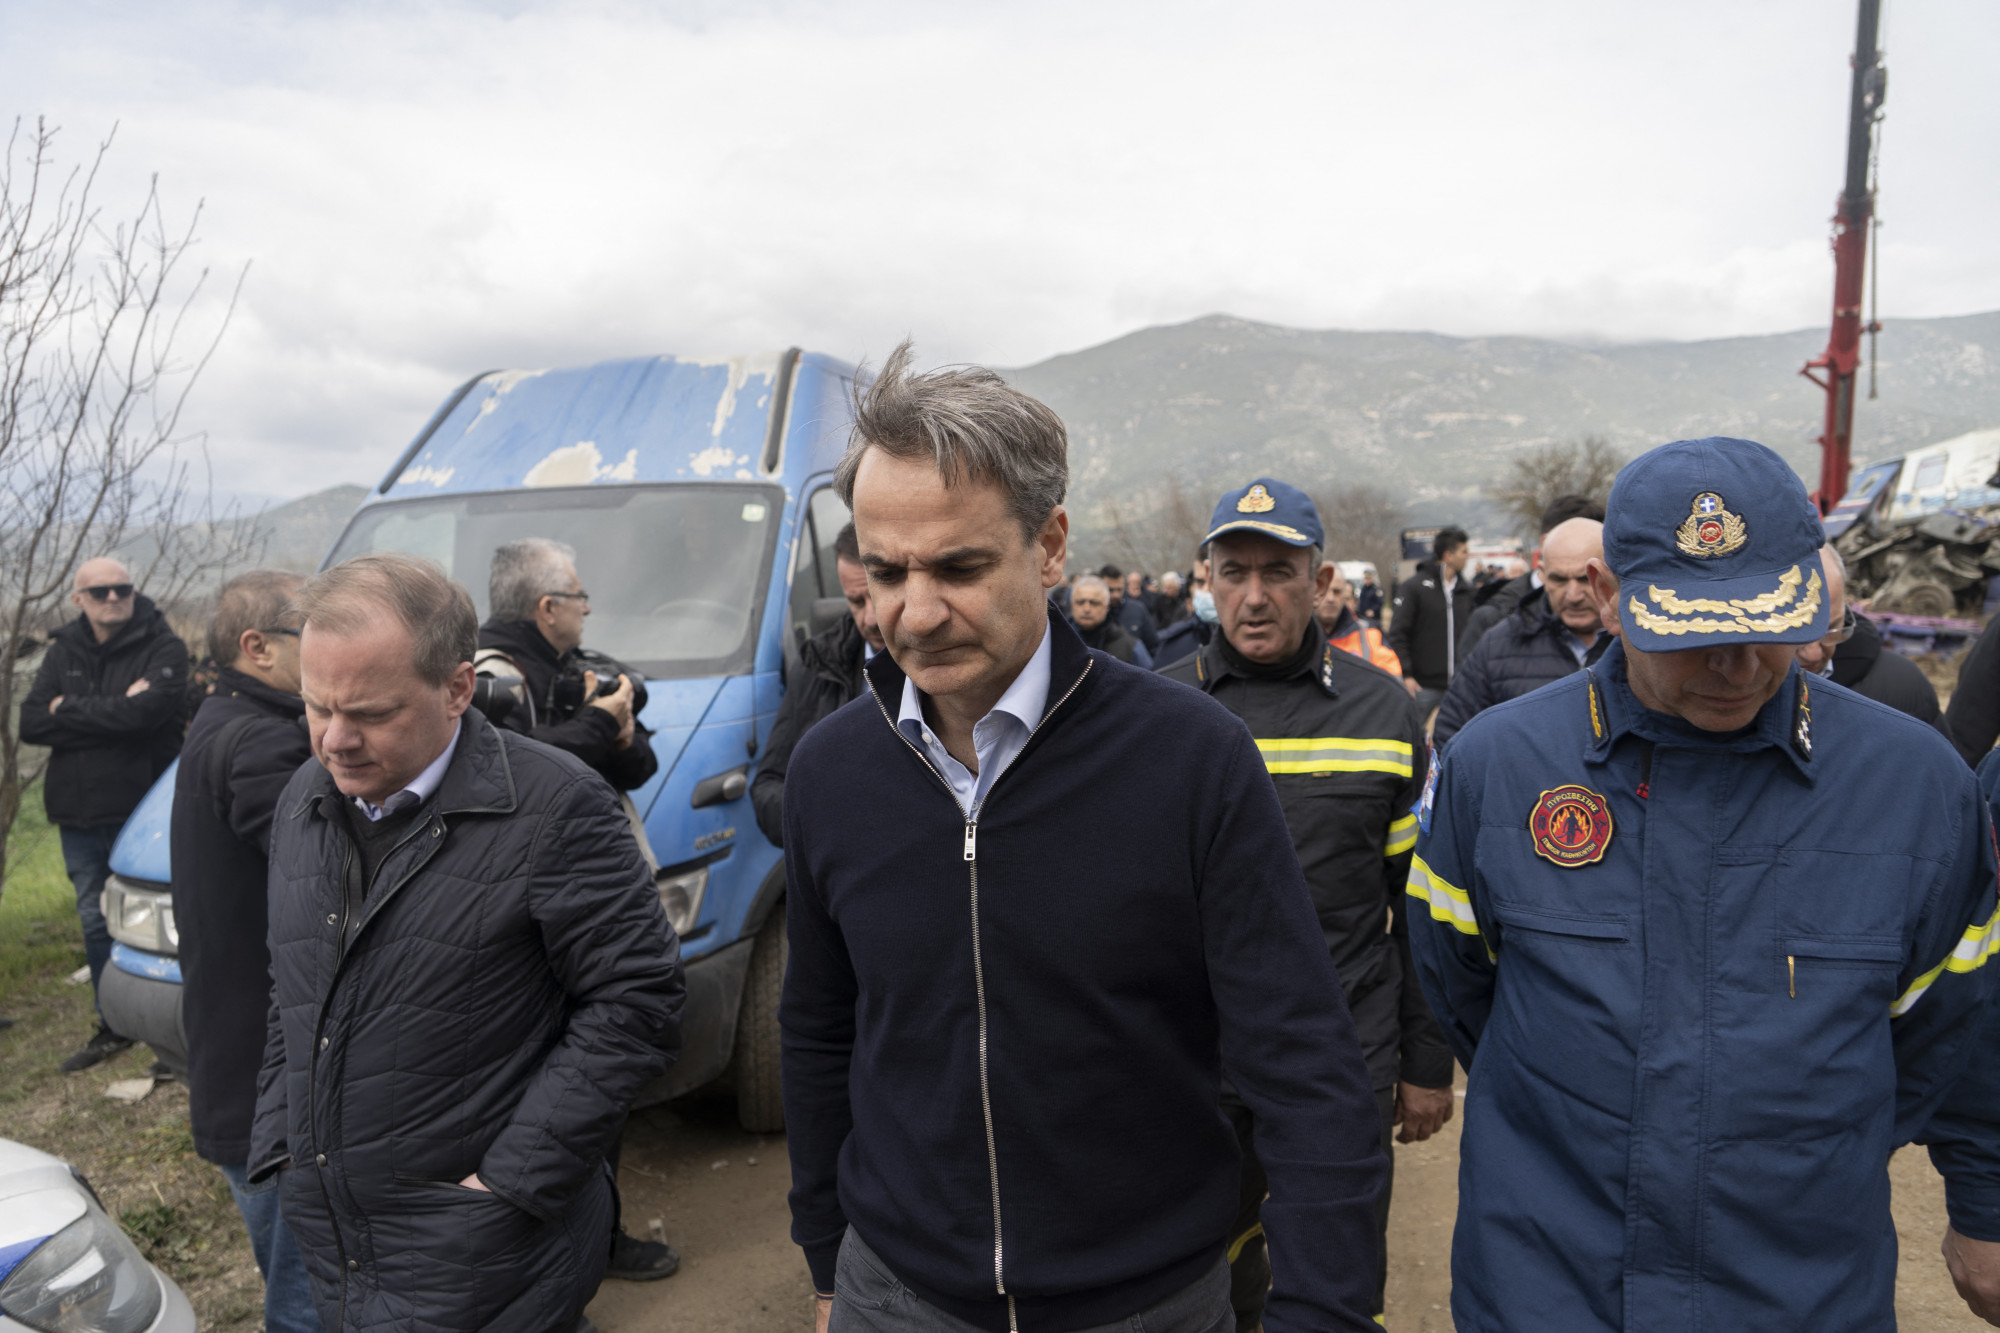 A görög miniszterelnök azt kéri a legfelsőbb bíróságtól, hogy kezeljék kiemelt jelentőségűként a vonatbalesetet